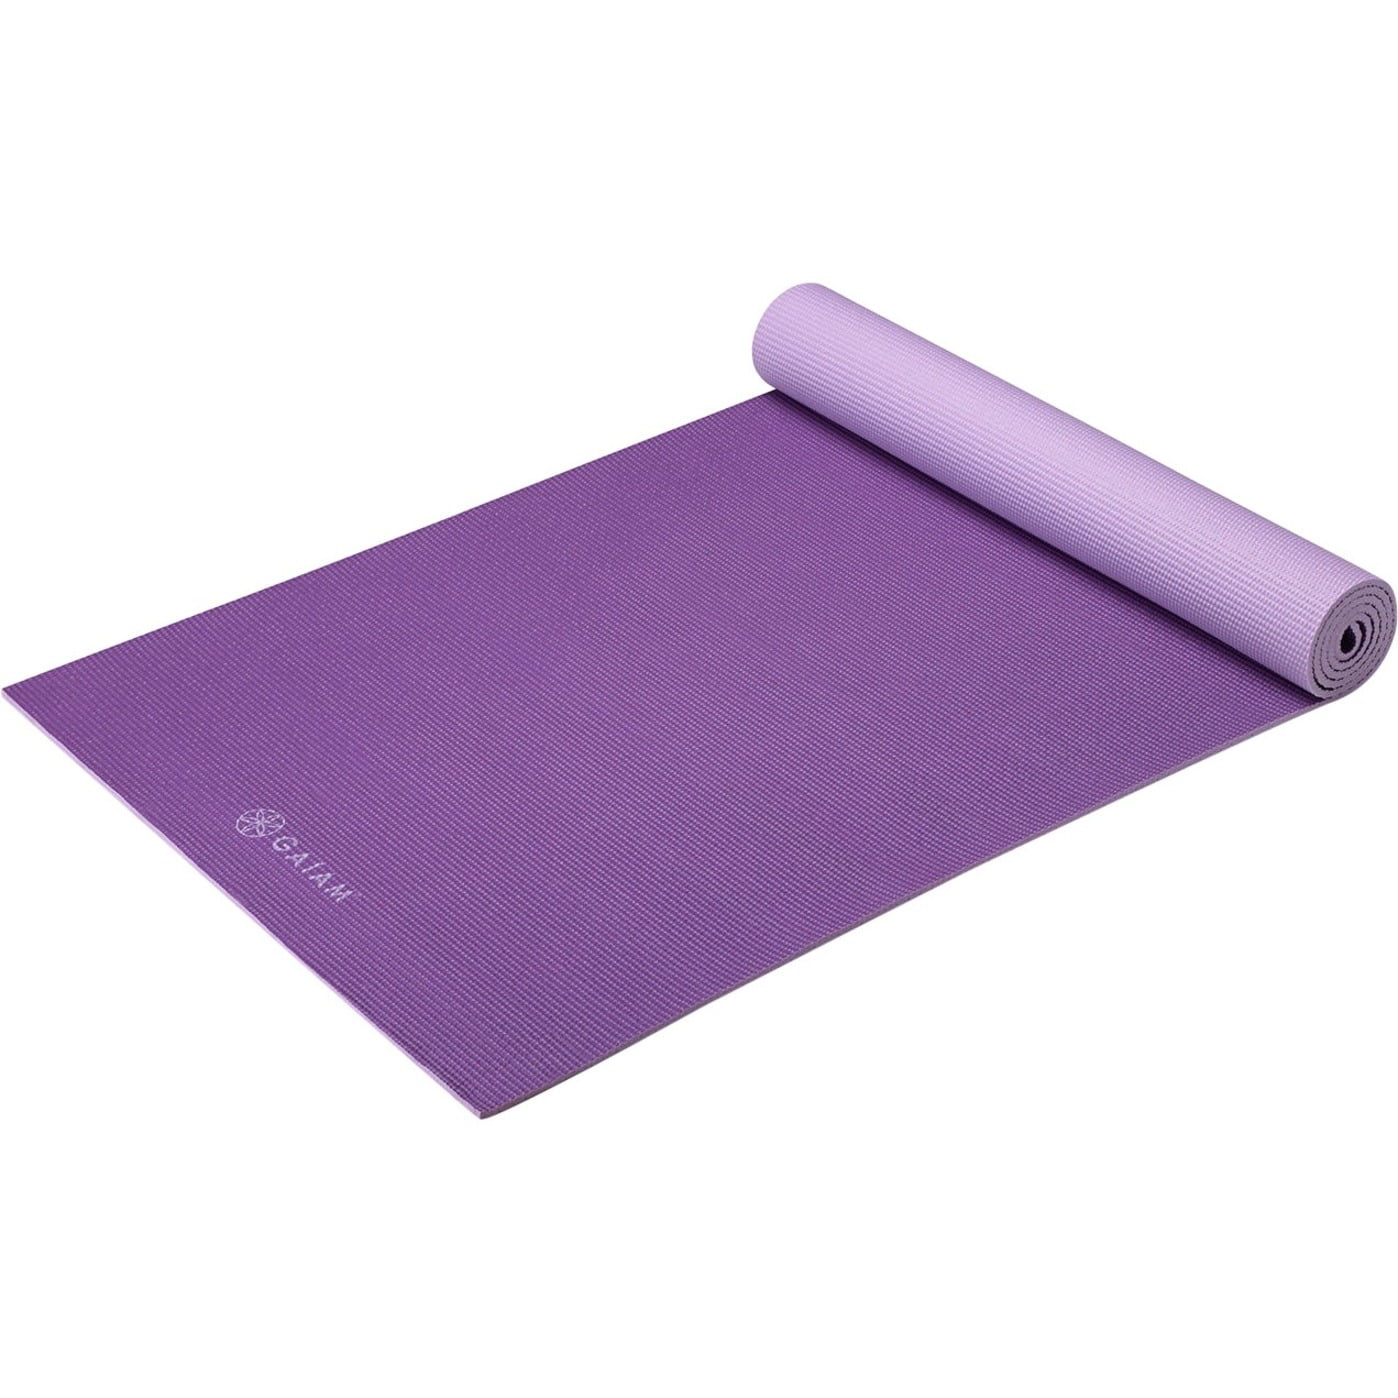 Gaiam Premium 2-Color Yoga Mat, Plum Jam, 5mm 